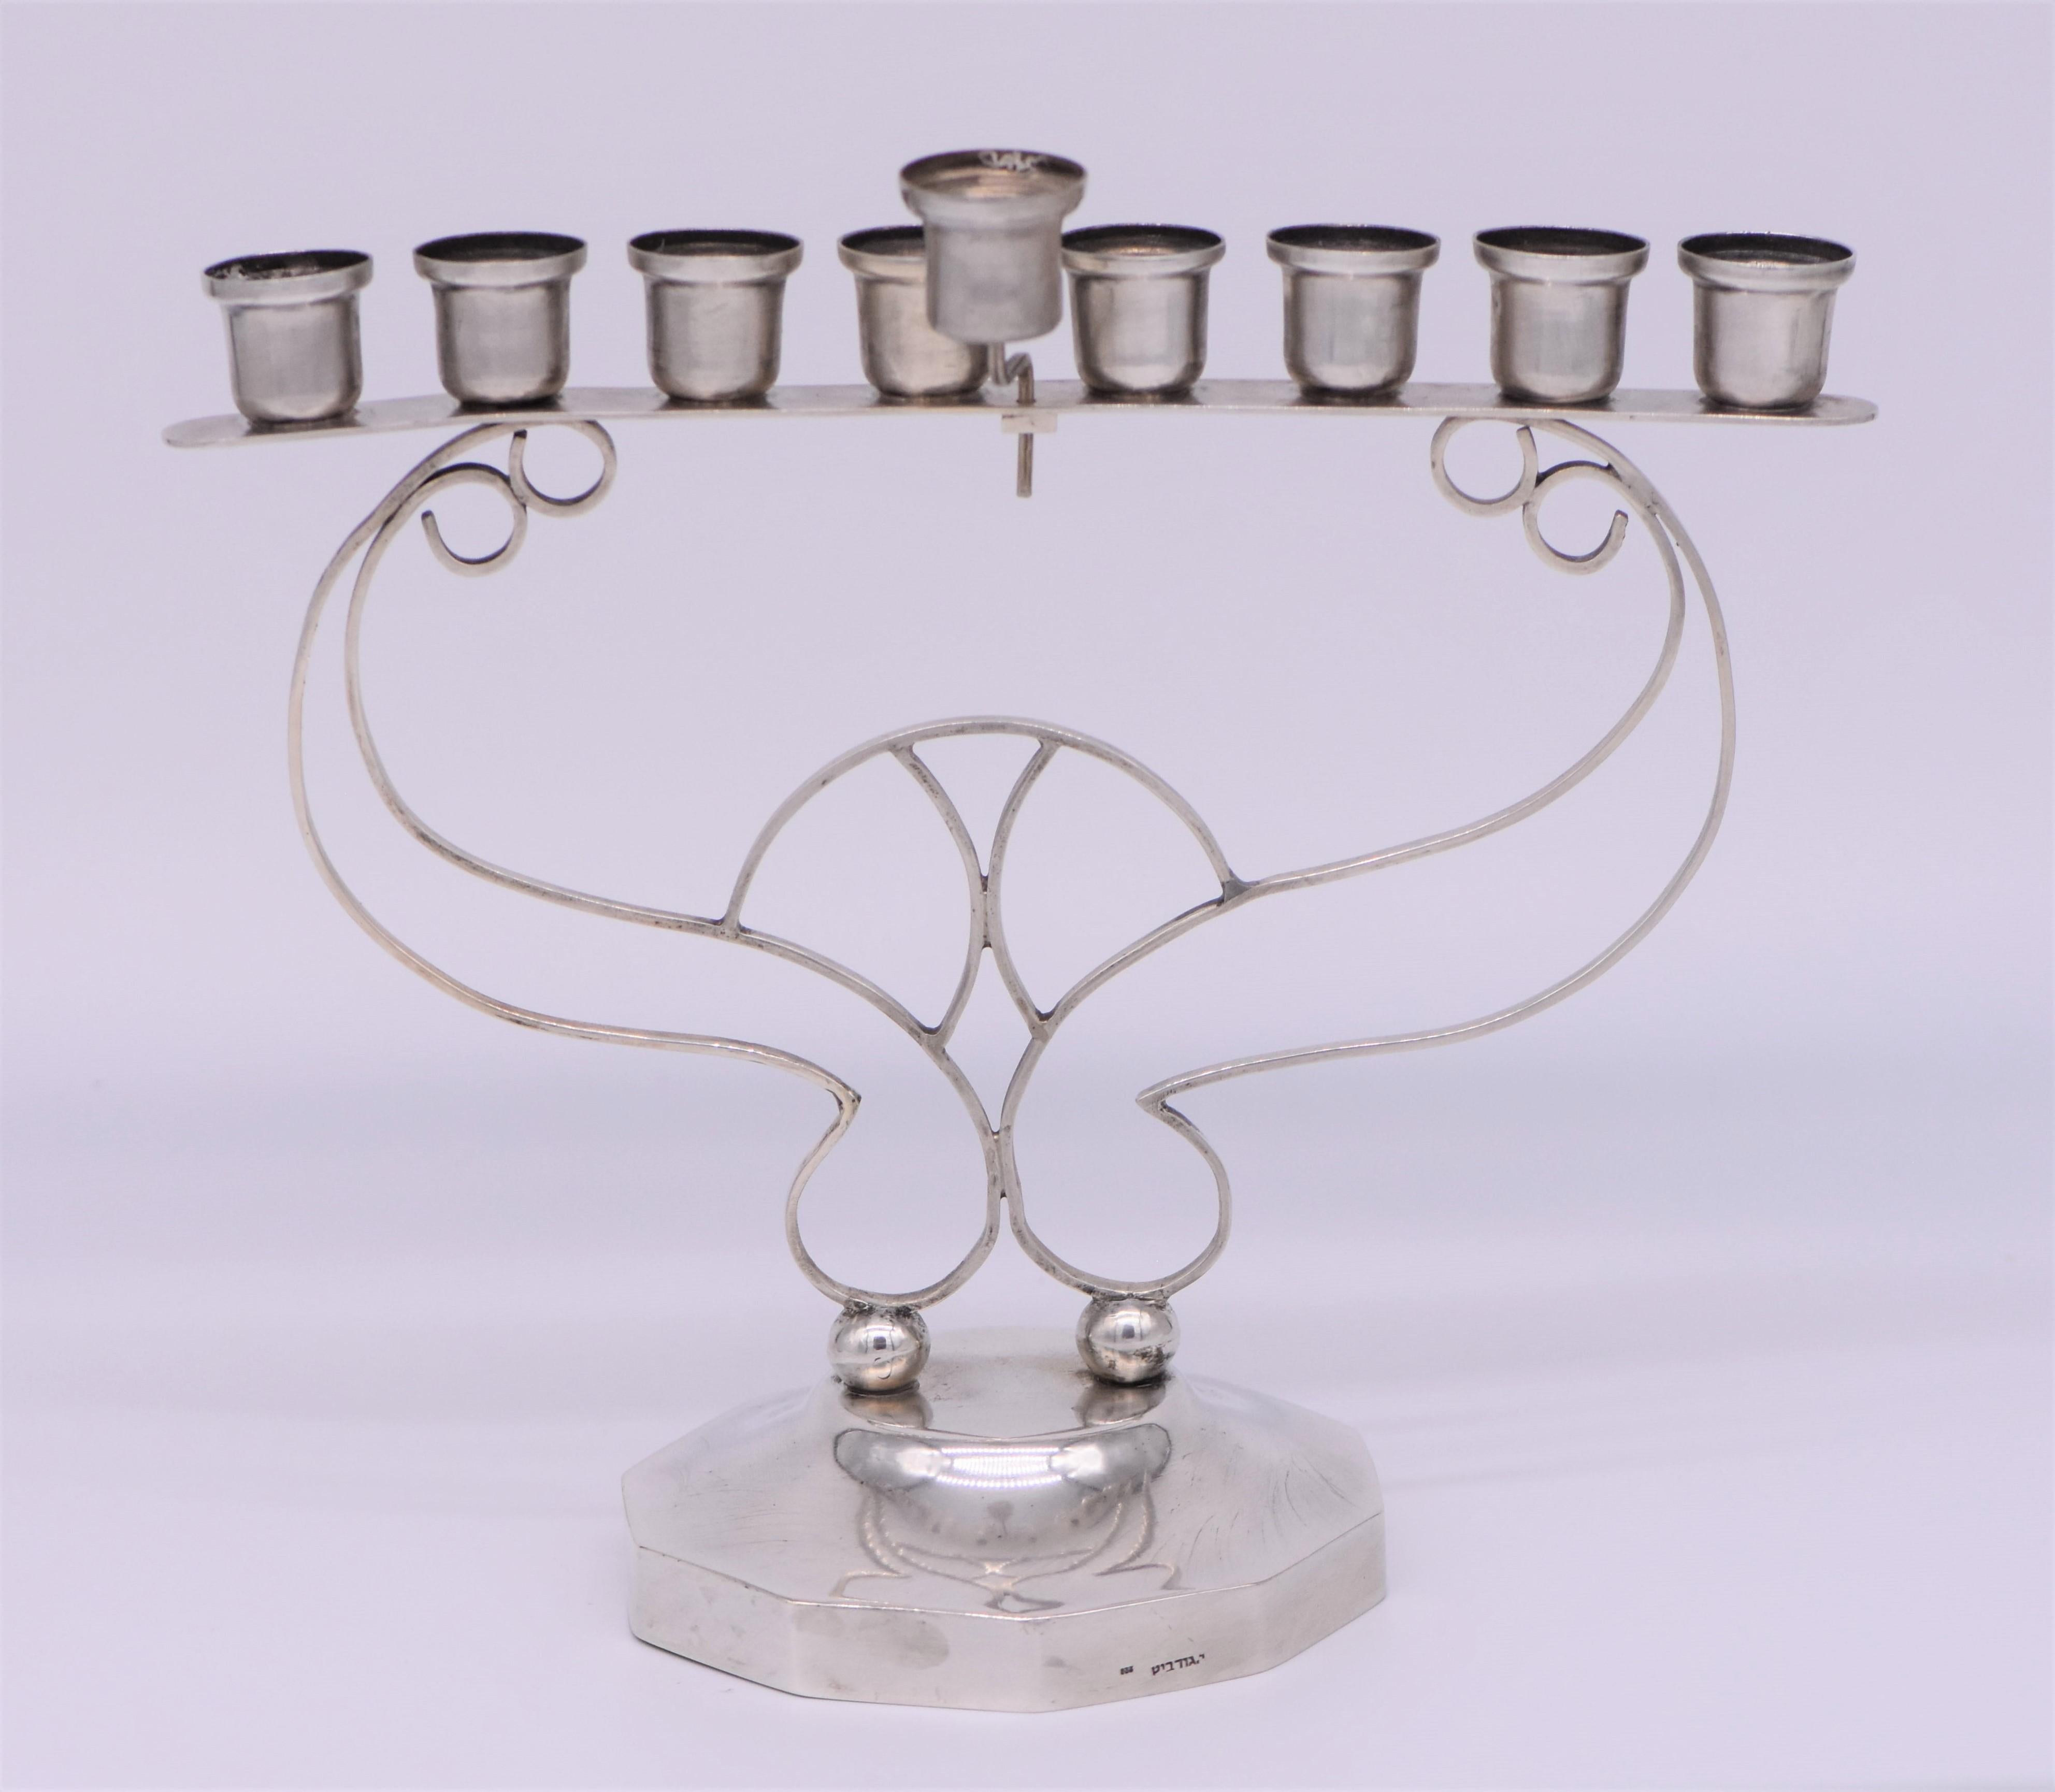 Handgefertigte Chanukka-Lampe aus Silber, Israel, ca. 1940er Jahre.
Schöne Arts & Crafts Chanukka-Lampe von I. Gurevitz. mit großer Hand Silberarbeit mit massiven Silberdrähten in der Mitte, verbunden mit acht Kerzenhalter und mit dem